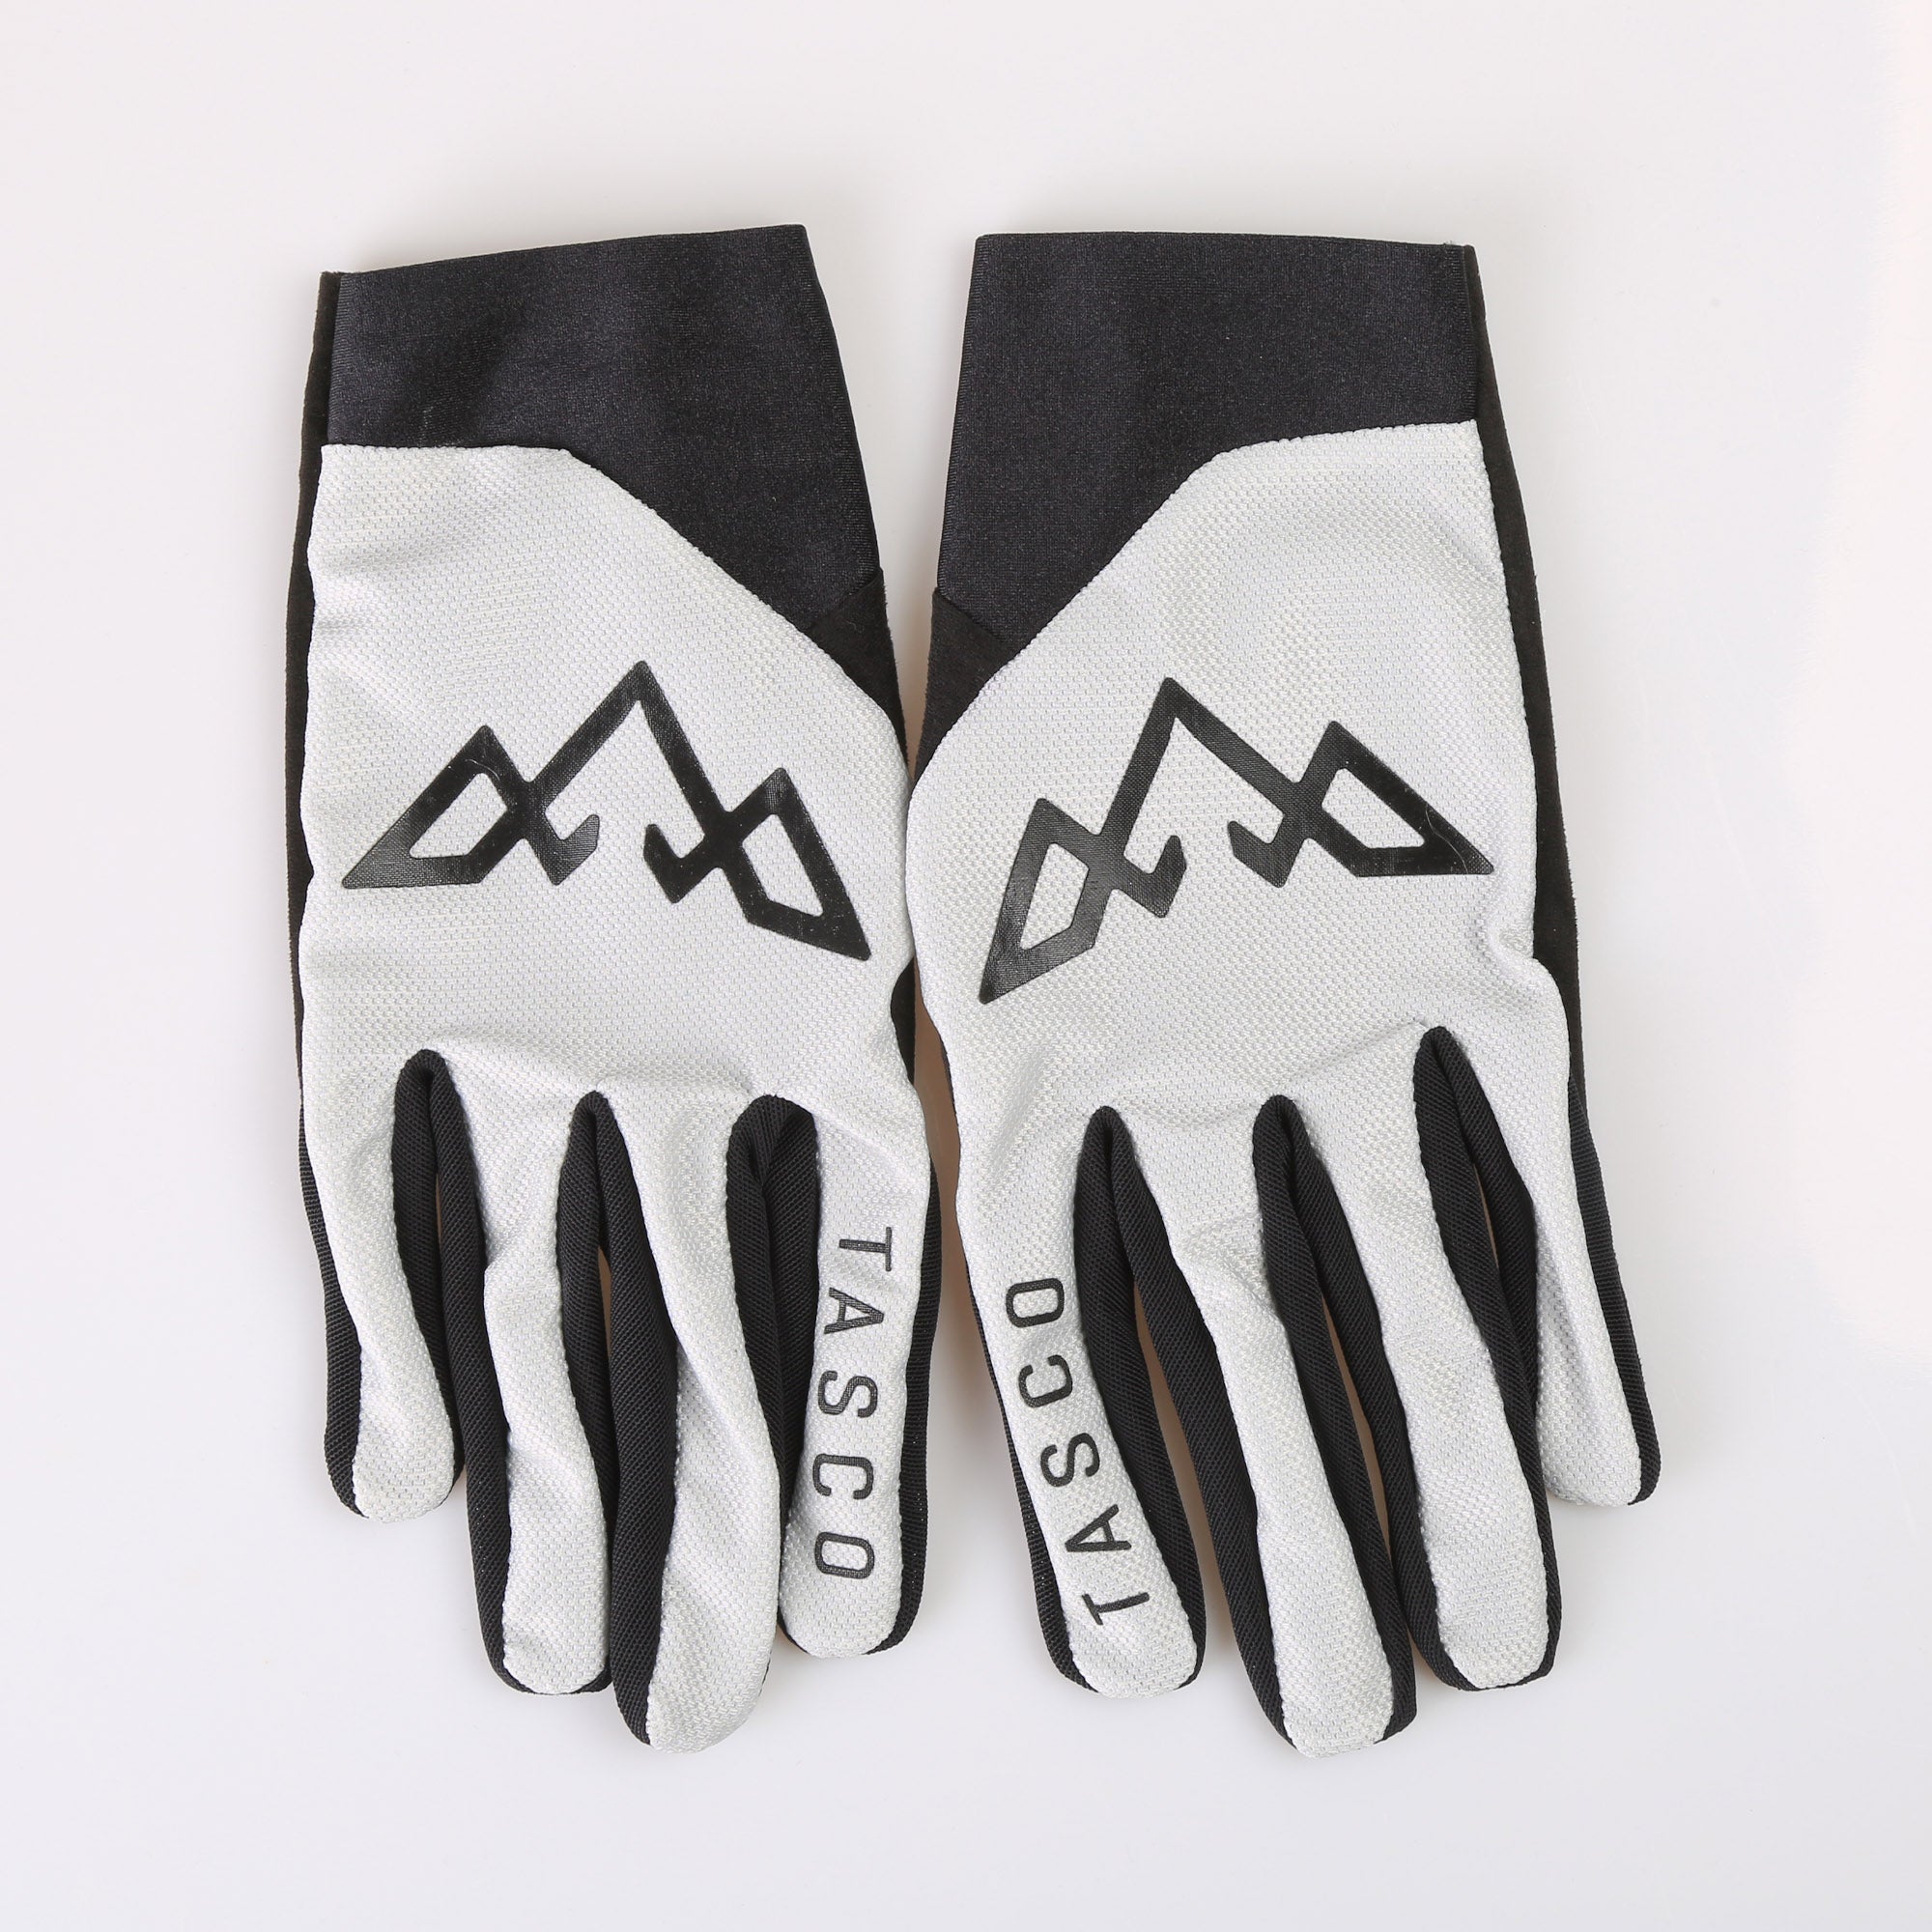 Fantom Ultralite Gloves - Vapor